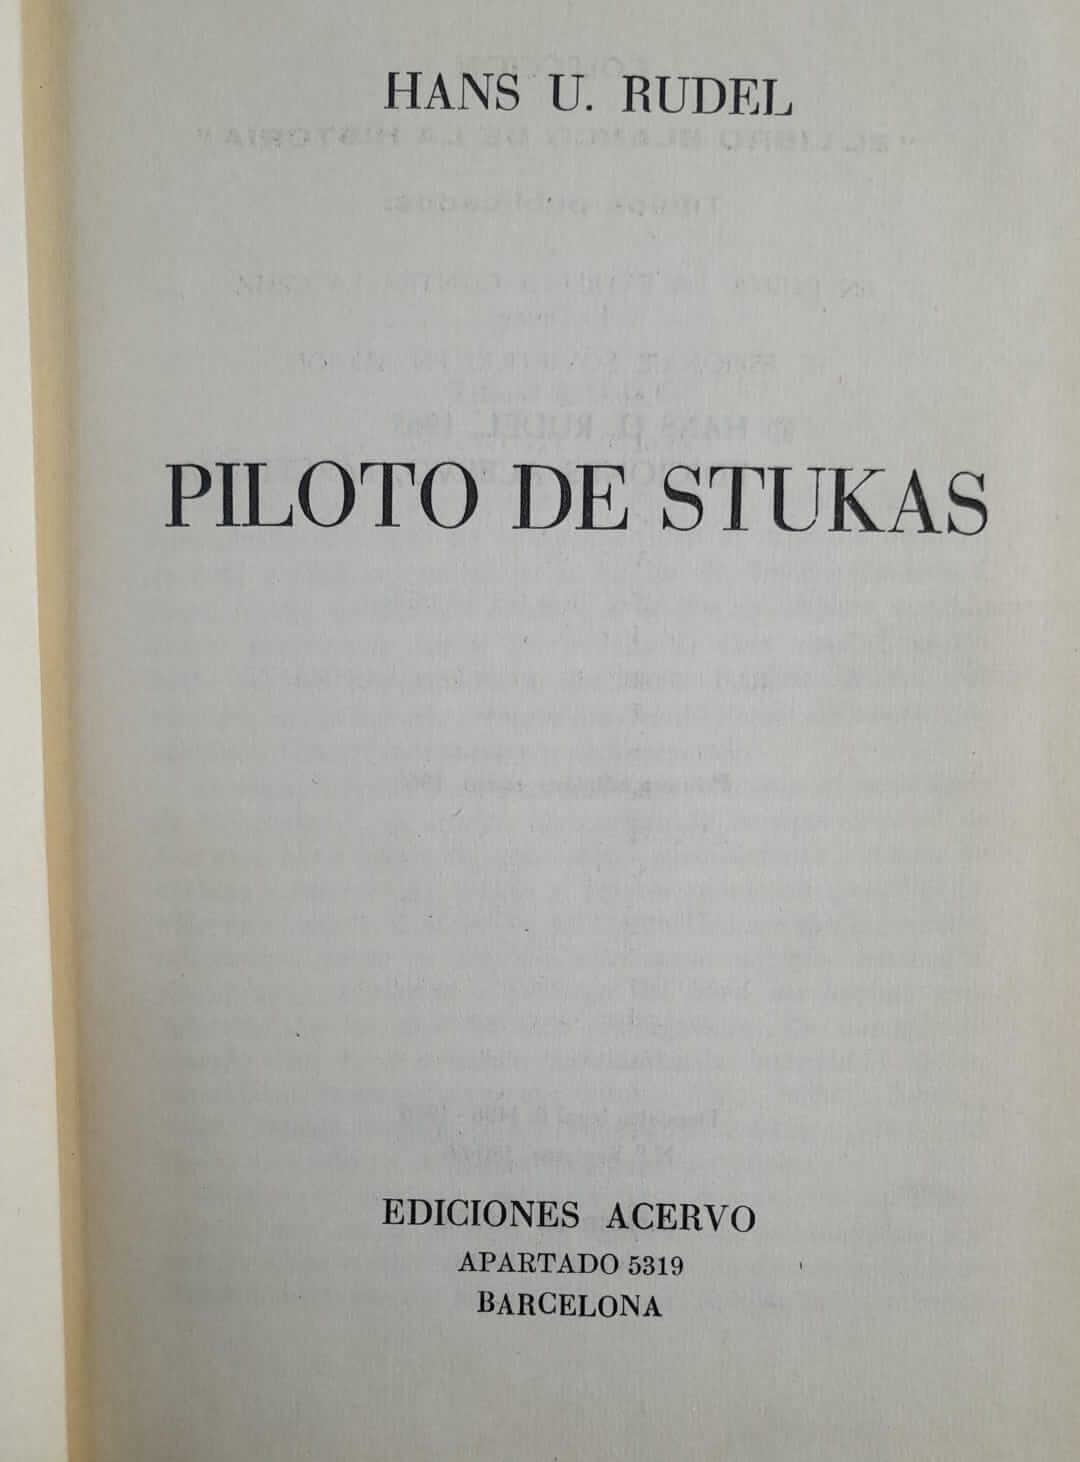 Piloto de Stukas